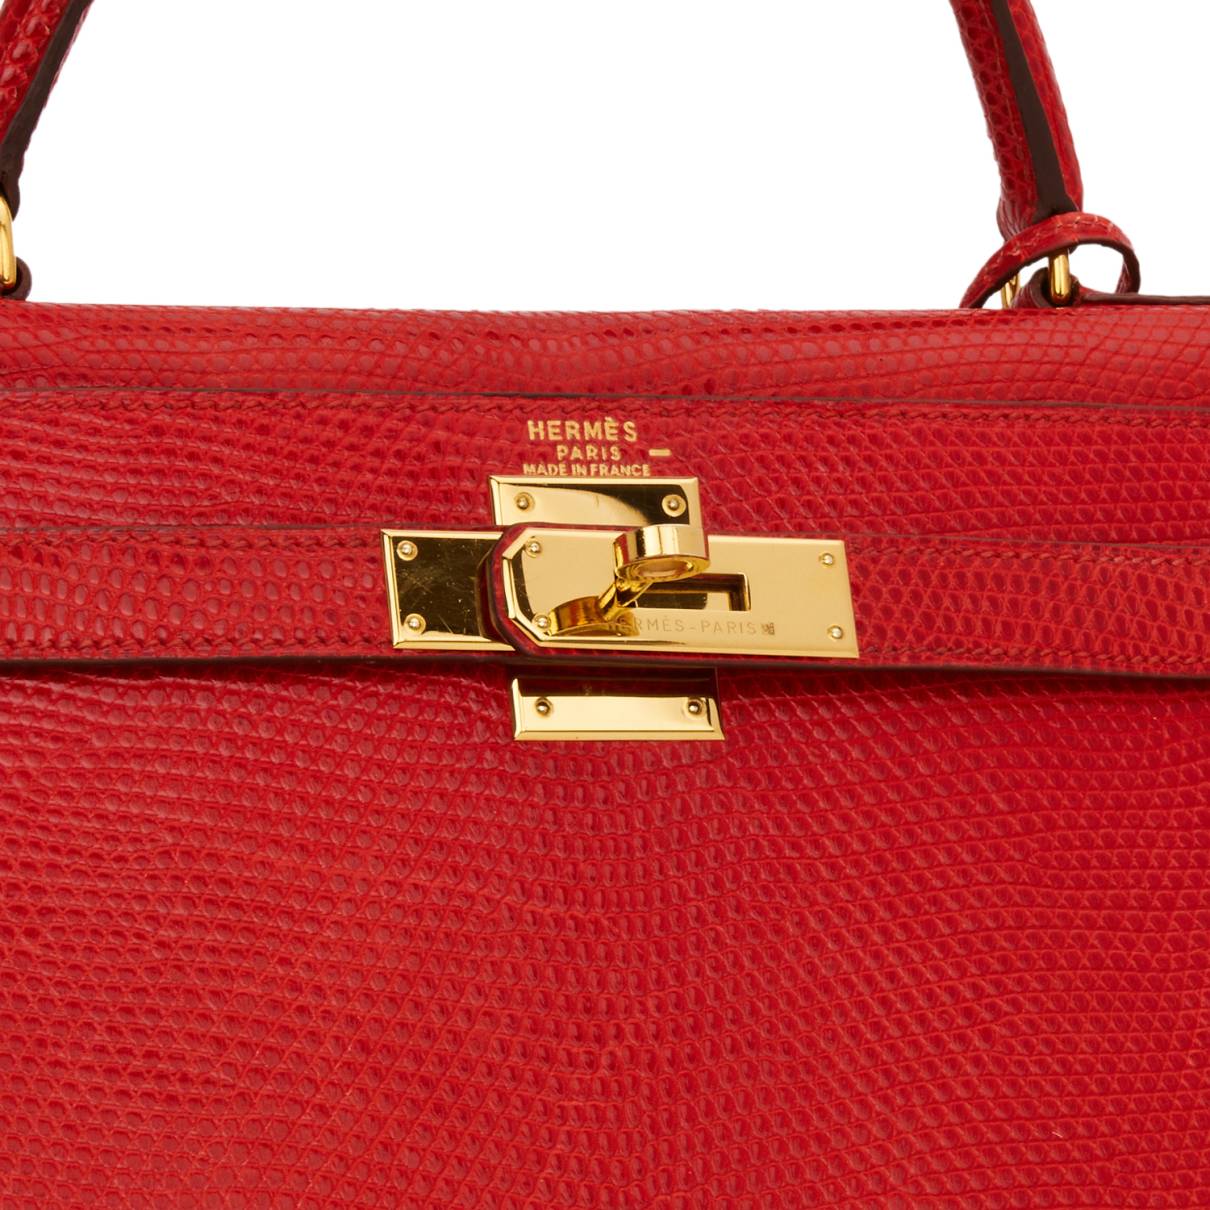 Hermes Kelly bag red  Kelly bag, My style bags, Hermes kelly bag